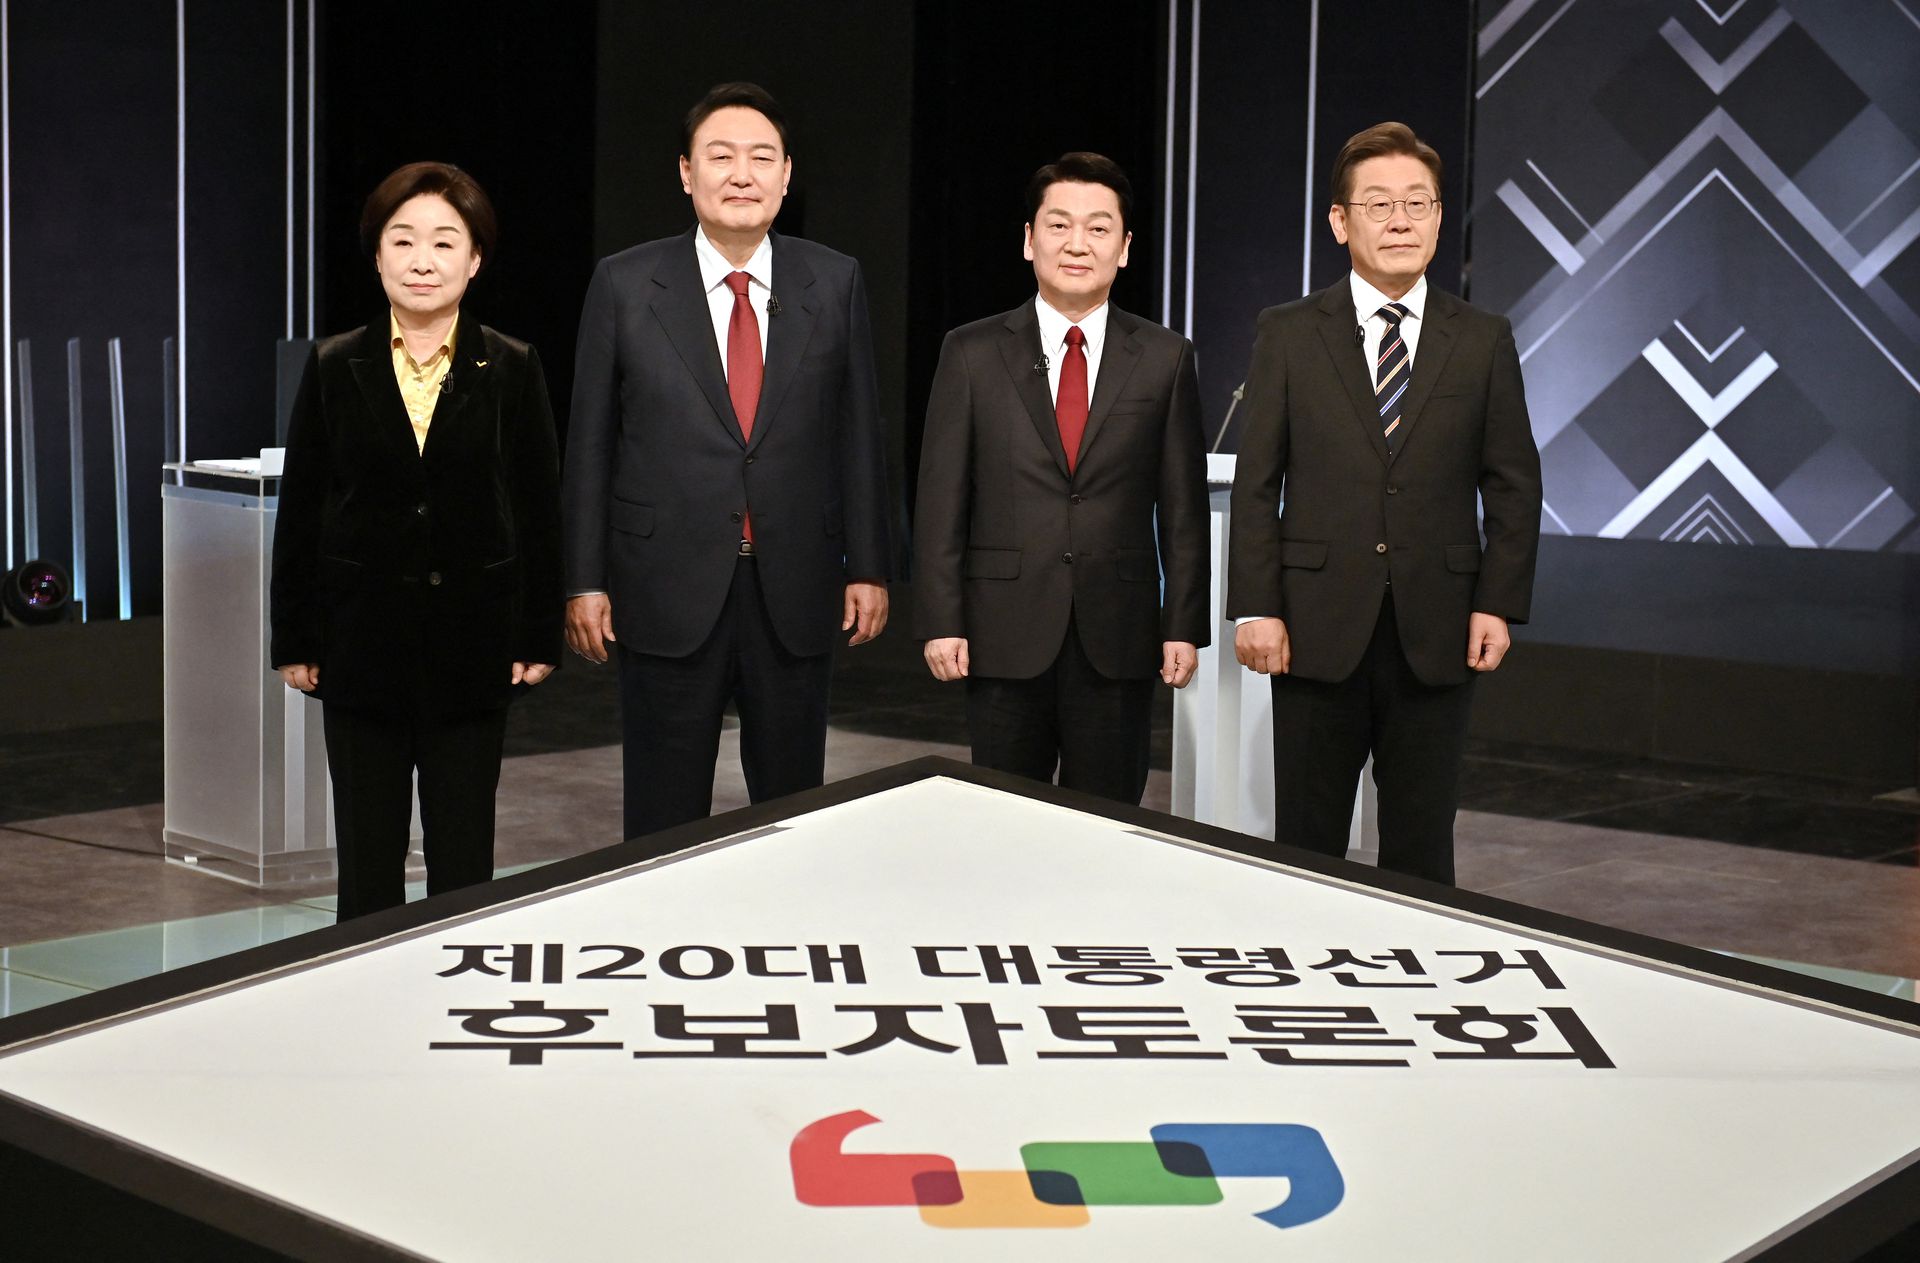 Hàn Quốc: Khoe đi bầu cử mà chụp ảnh không đúng cách sẽ bị phạt tới 4 triệu won - Ảnh 2